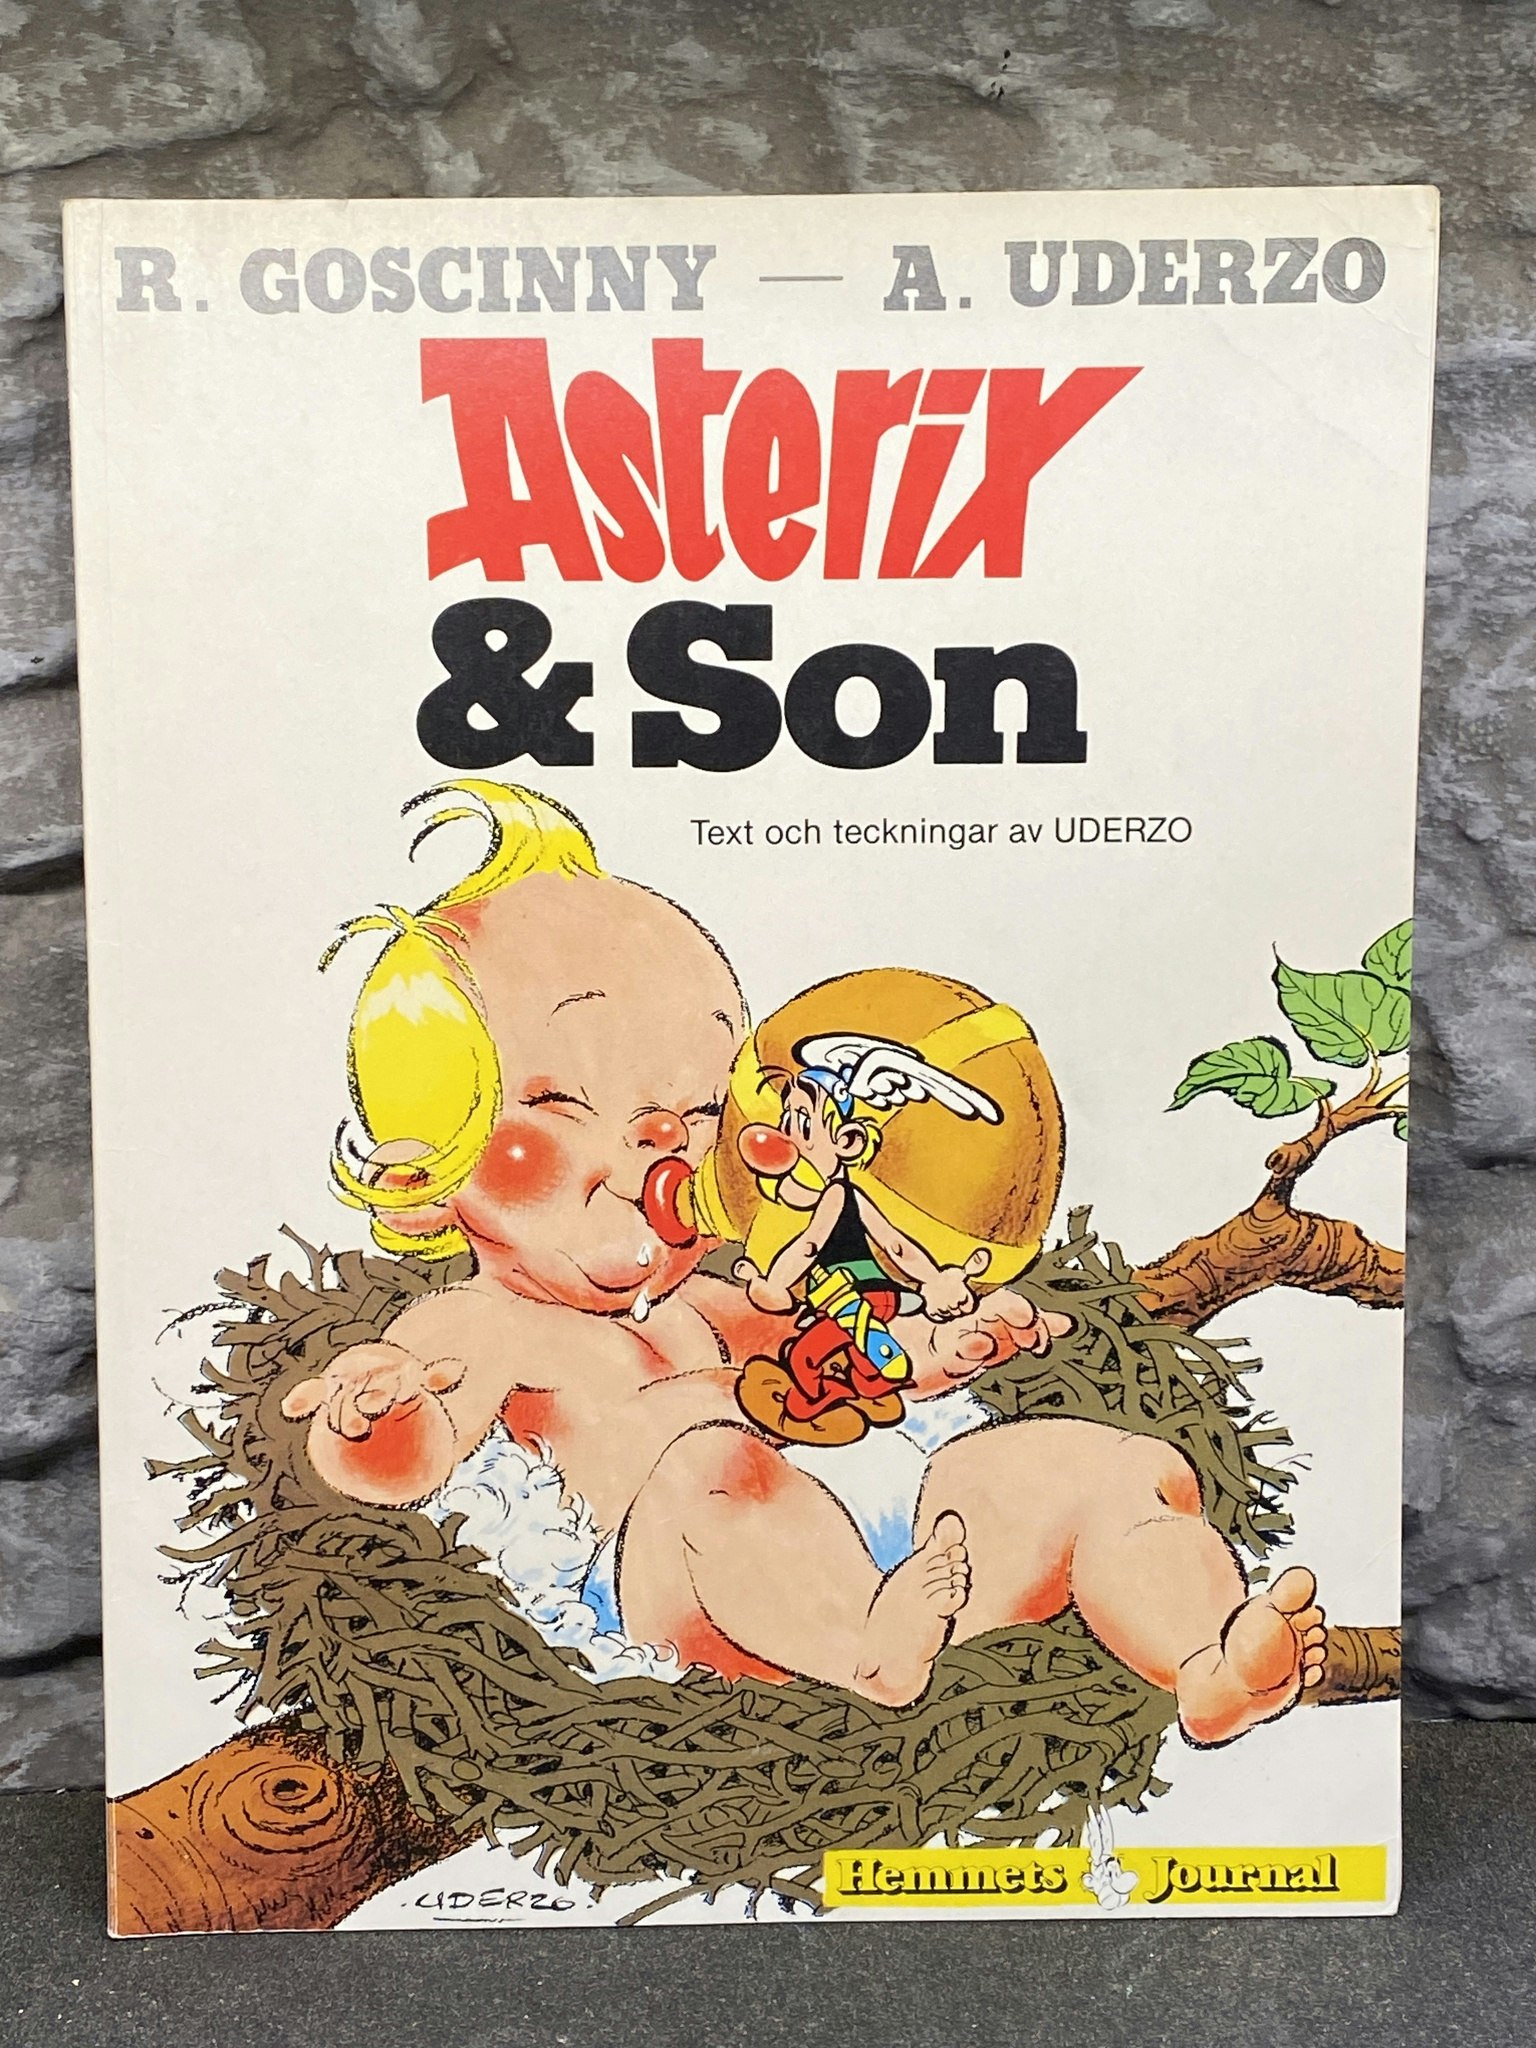 ASTERIX - Asterix & Son - R Goscinny & A Uderzo - Begagnat album i gott skick